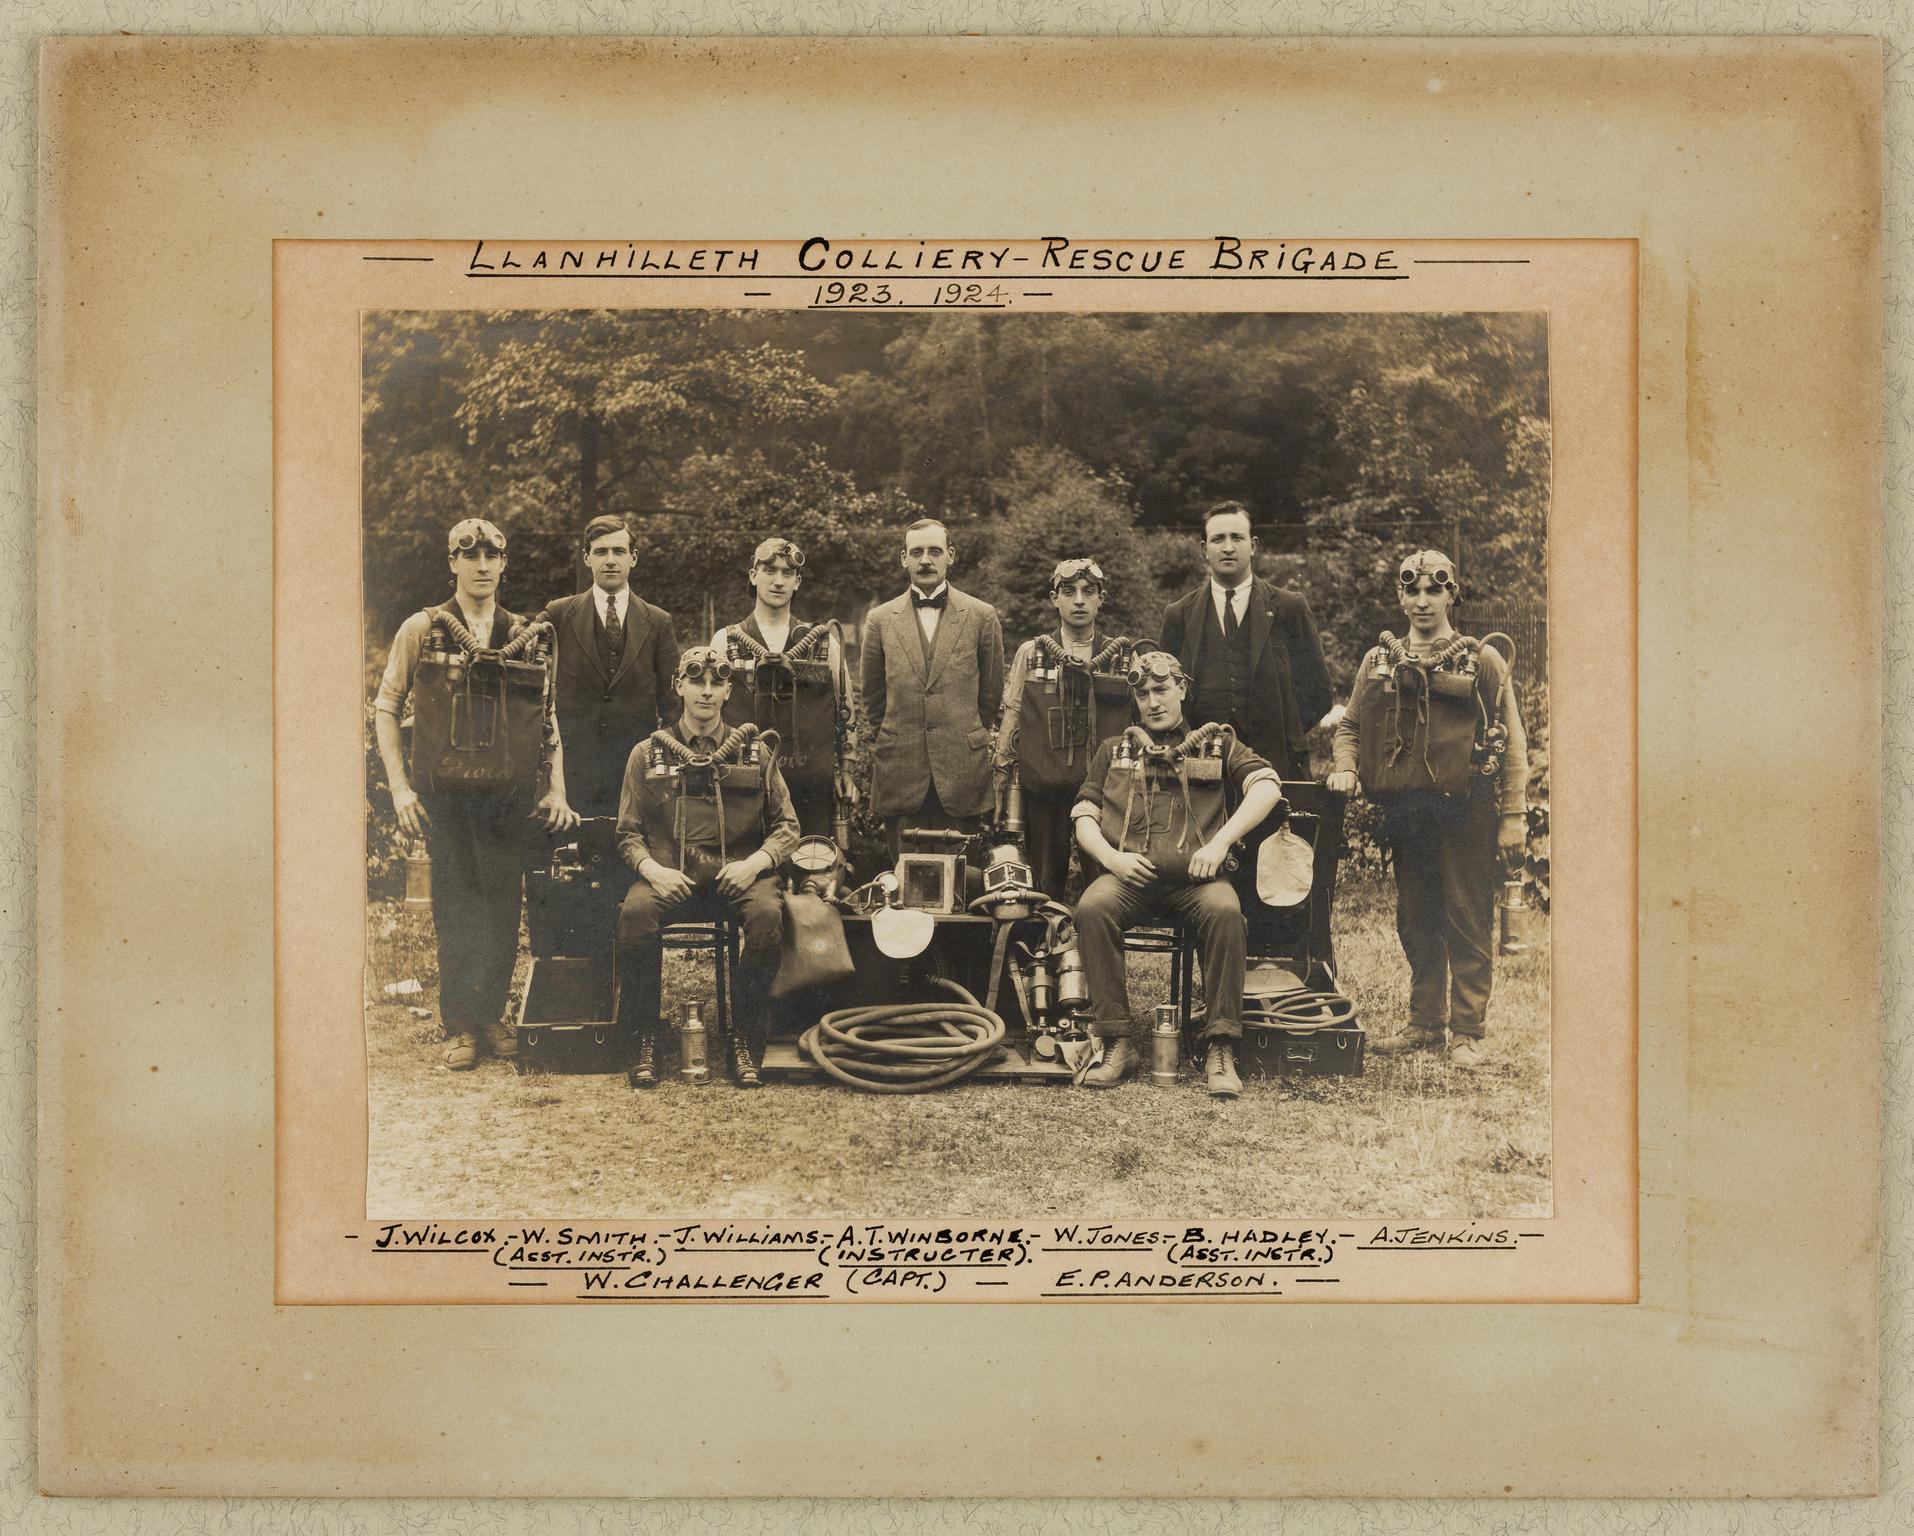 Llanhilleth Colliery Rescue Brigade 1923. 1924. (photograph)